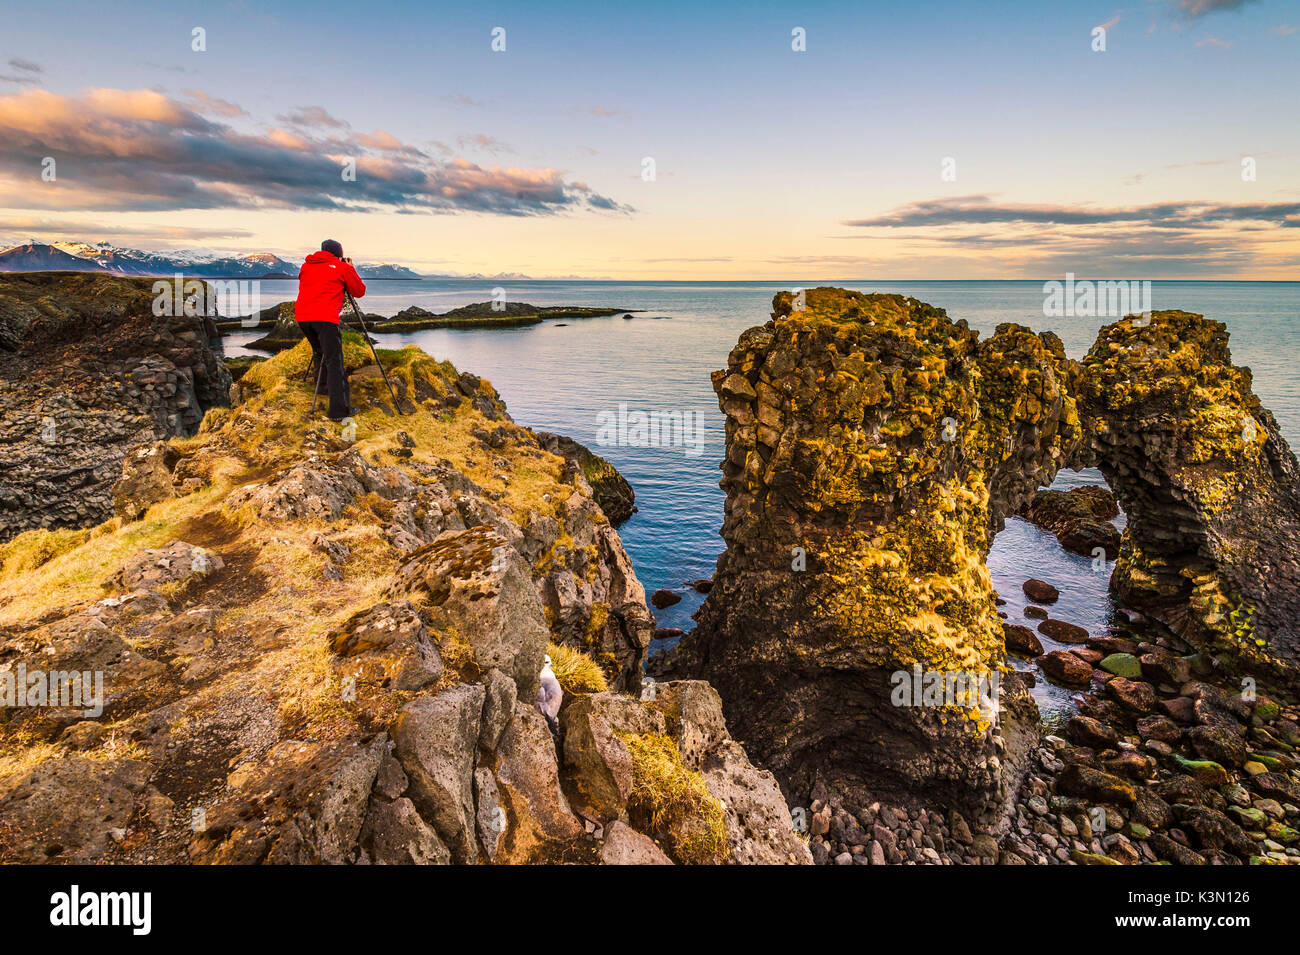 La péninsule de Snaefellsness, Islande. Homme debout sur une formation rocheuse le long de la côte. Banque D'Images